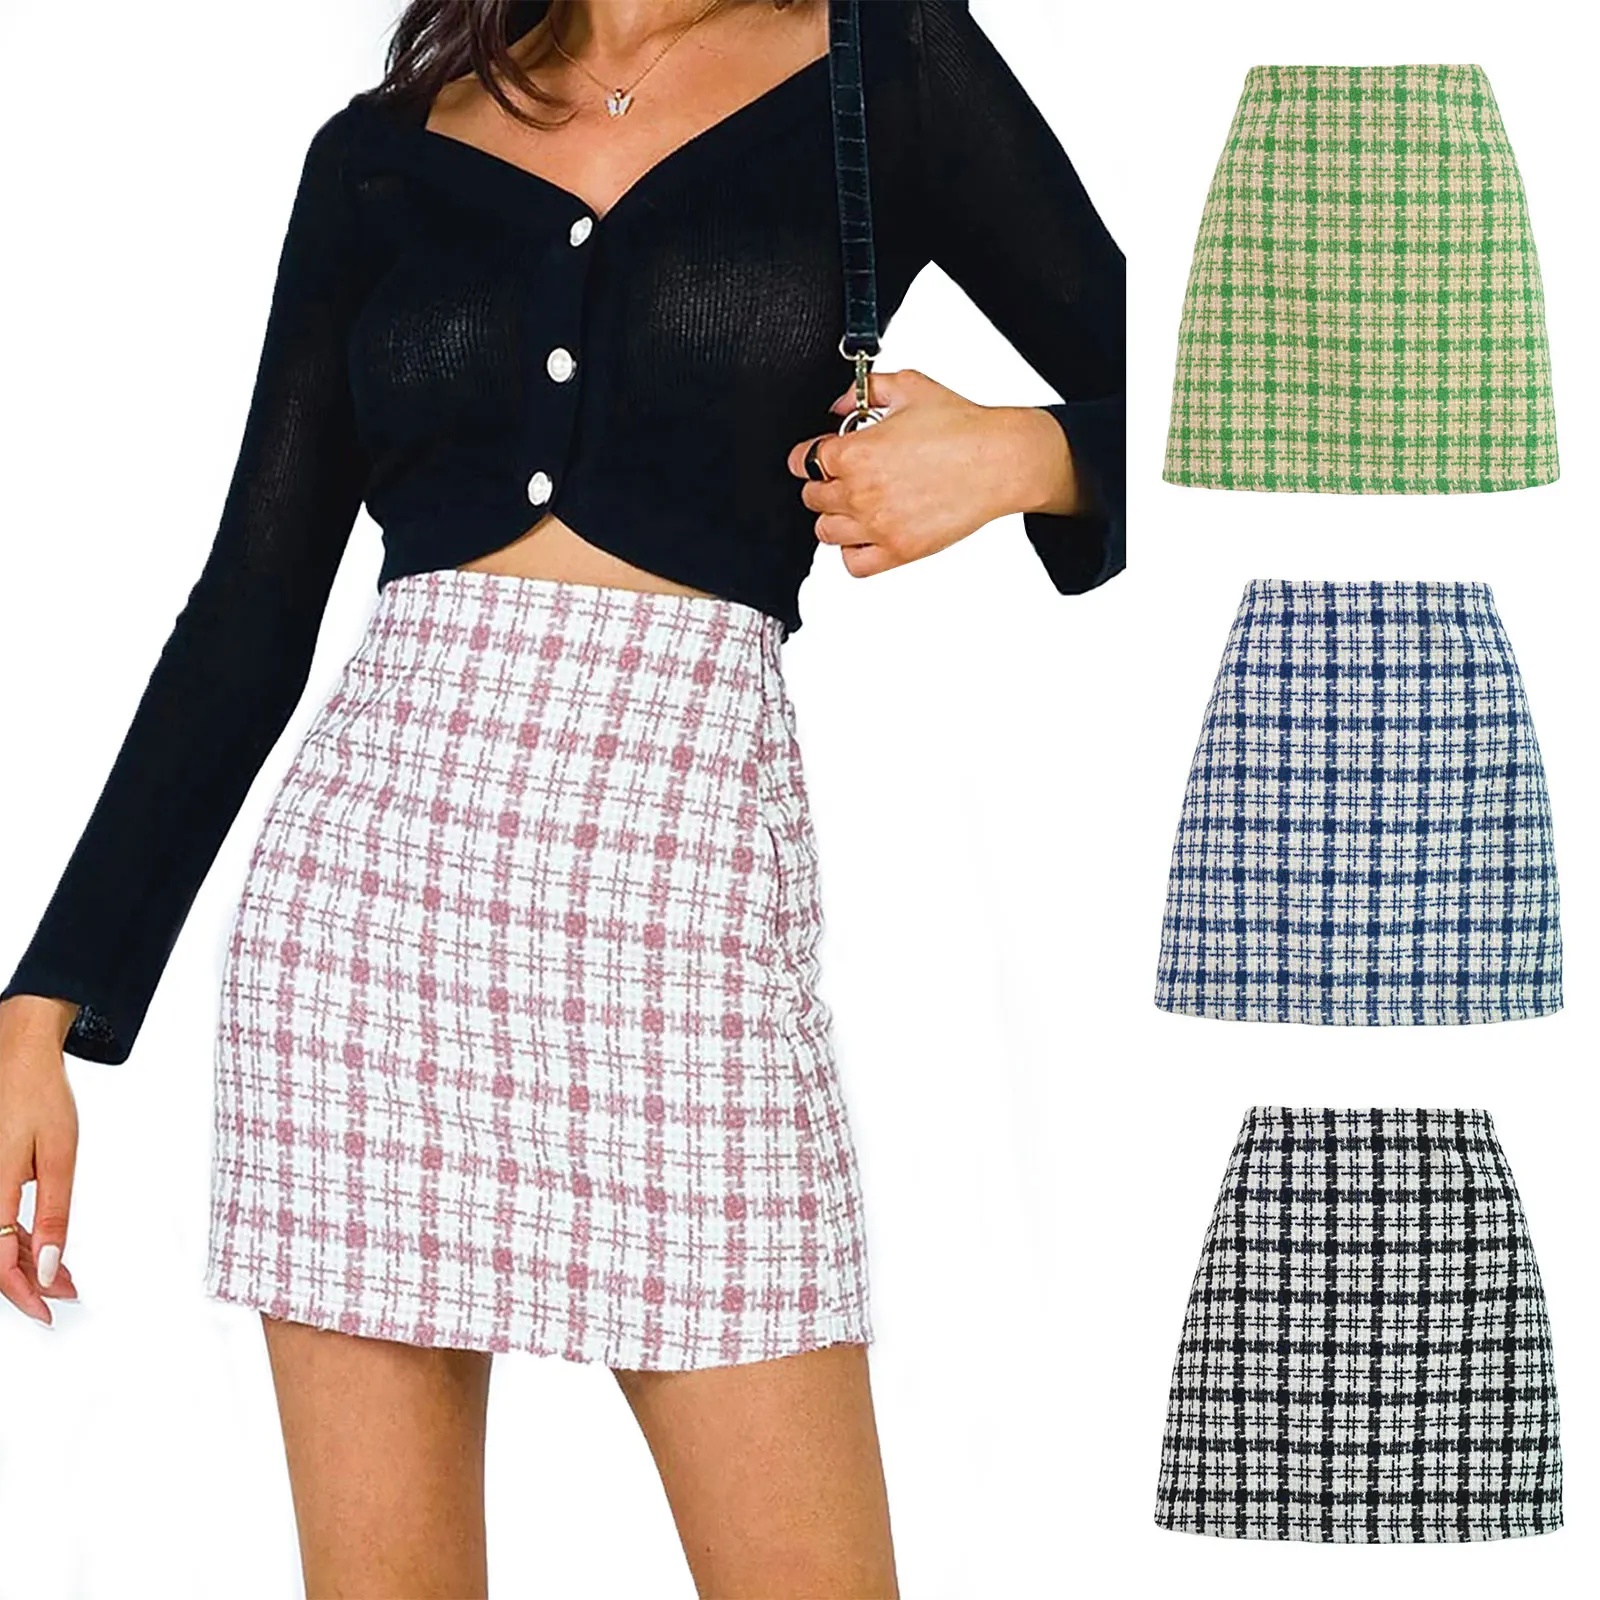 Women'S Woolen High-Waist A-Line Formal Short Skirt Plaid Print Pattern High-Waist Zipper Skirt  Pink/Green/Black/Blue